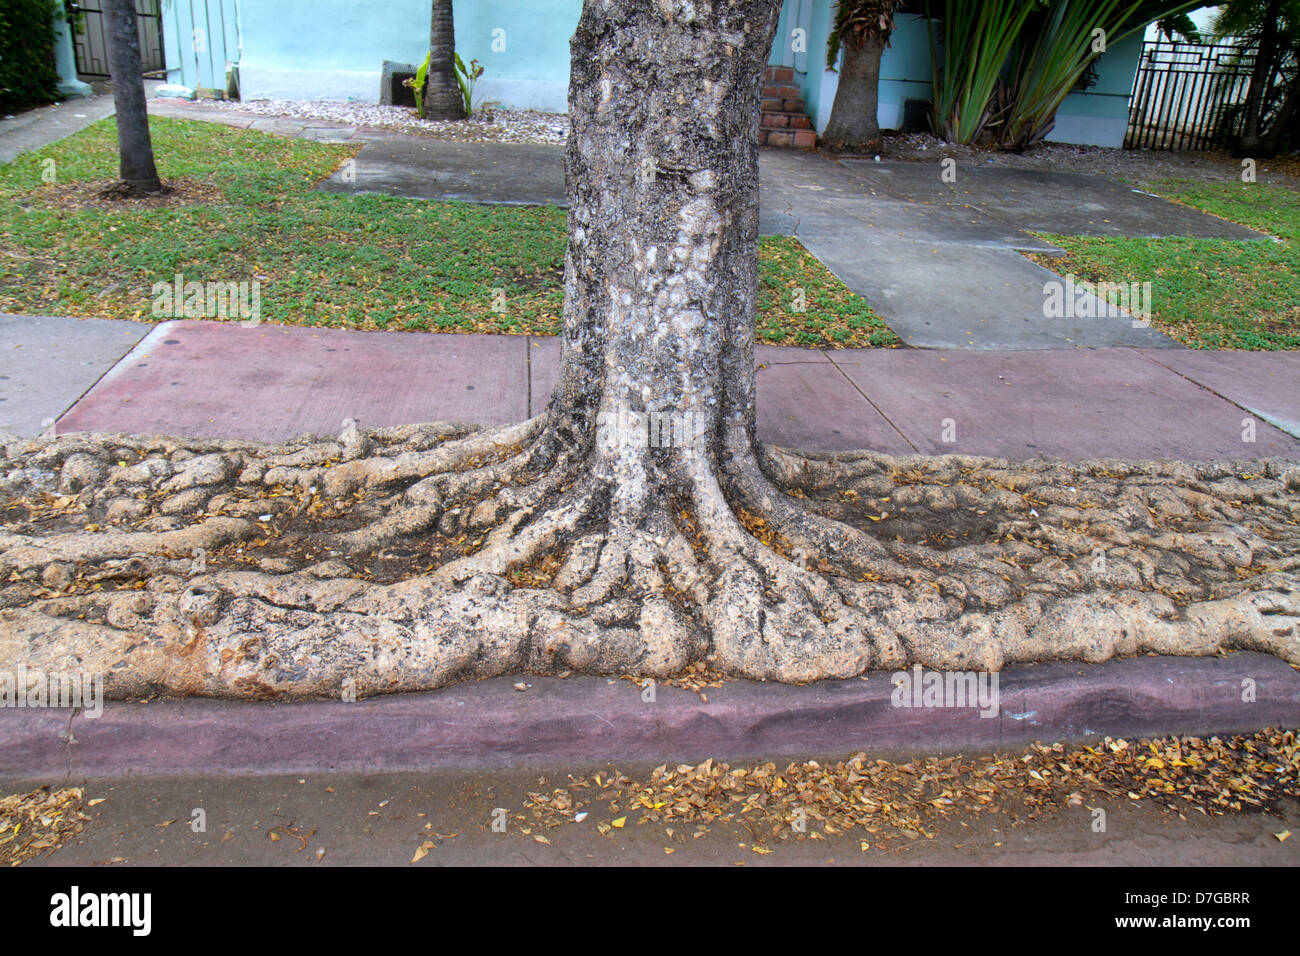 Miami Beach Florida, Baum, Stamm, Basis, Wurzeln, freigelegt, ausgebreitet, FL120929026 Stockfoto